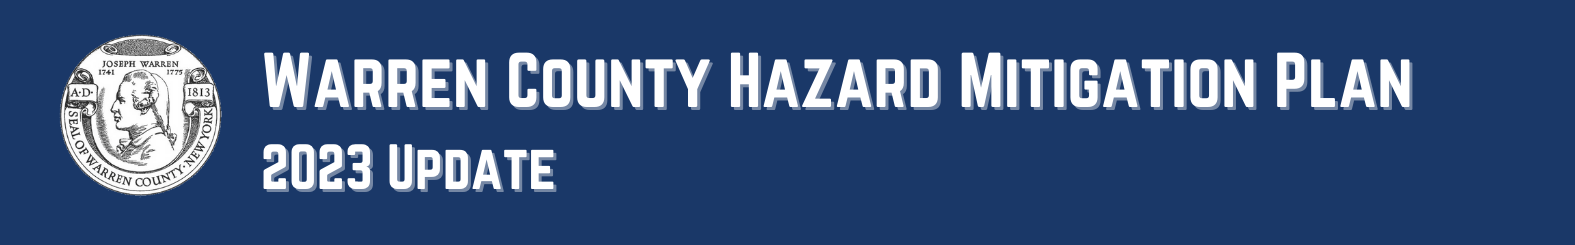 Warren County Hazard Mitigation Plan (HMP) Update